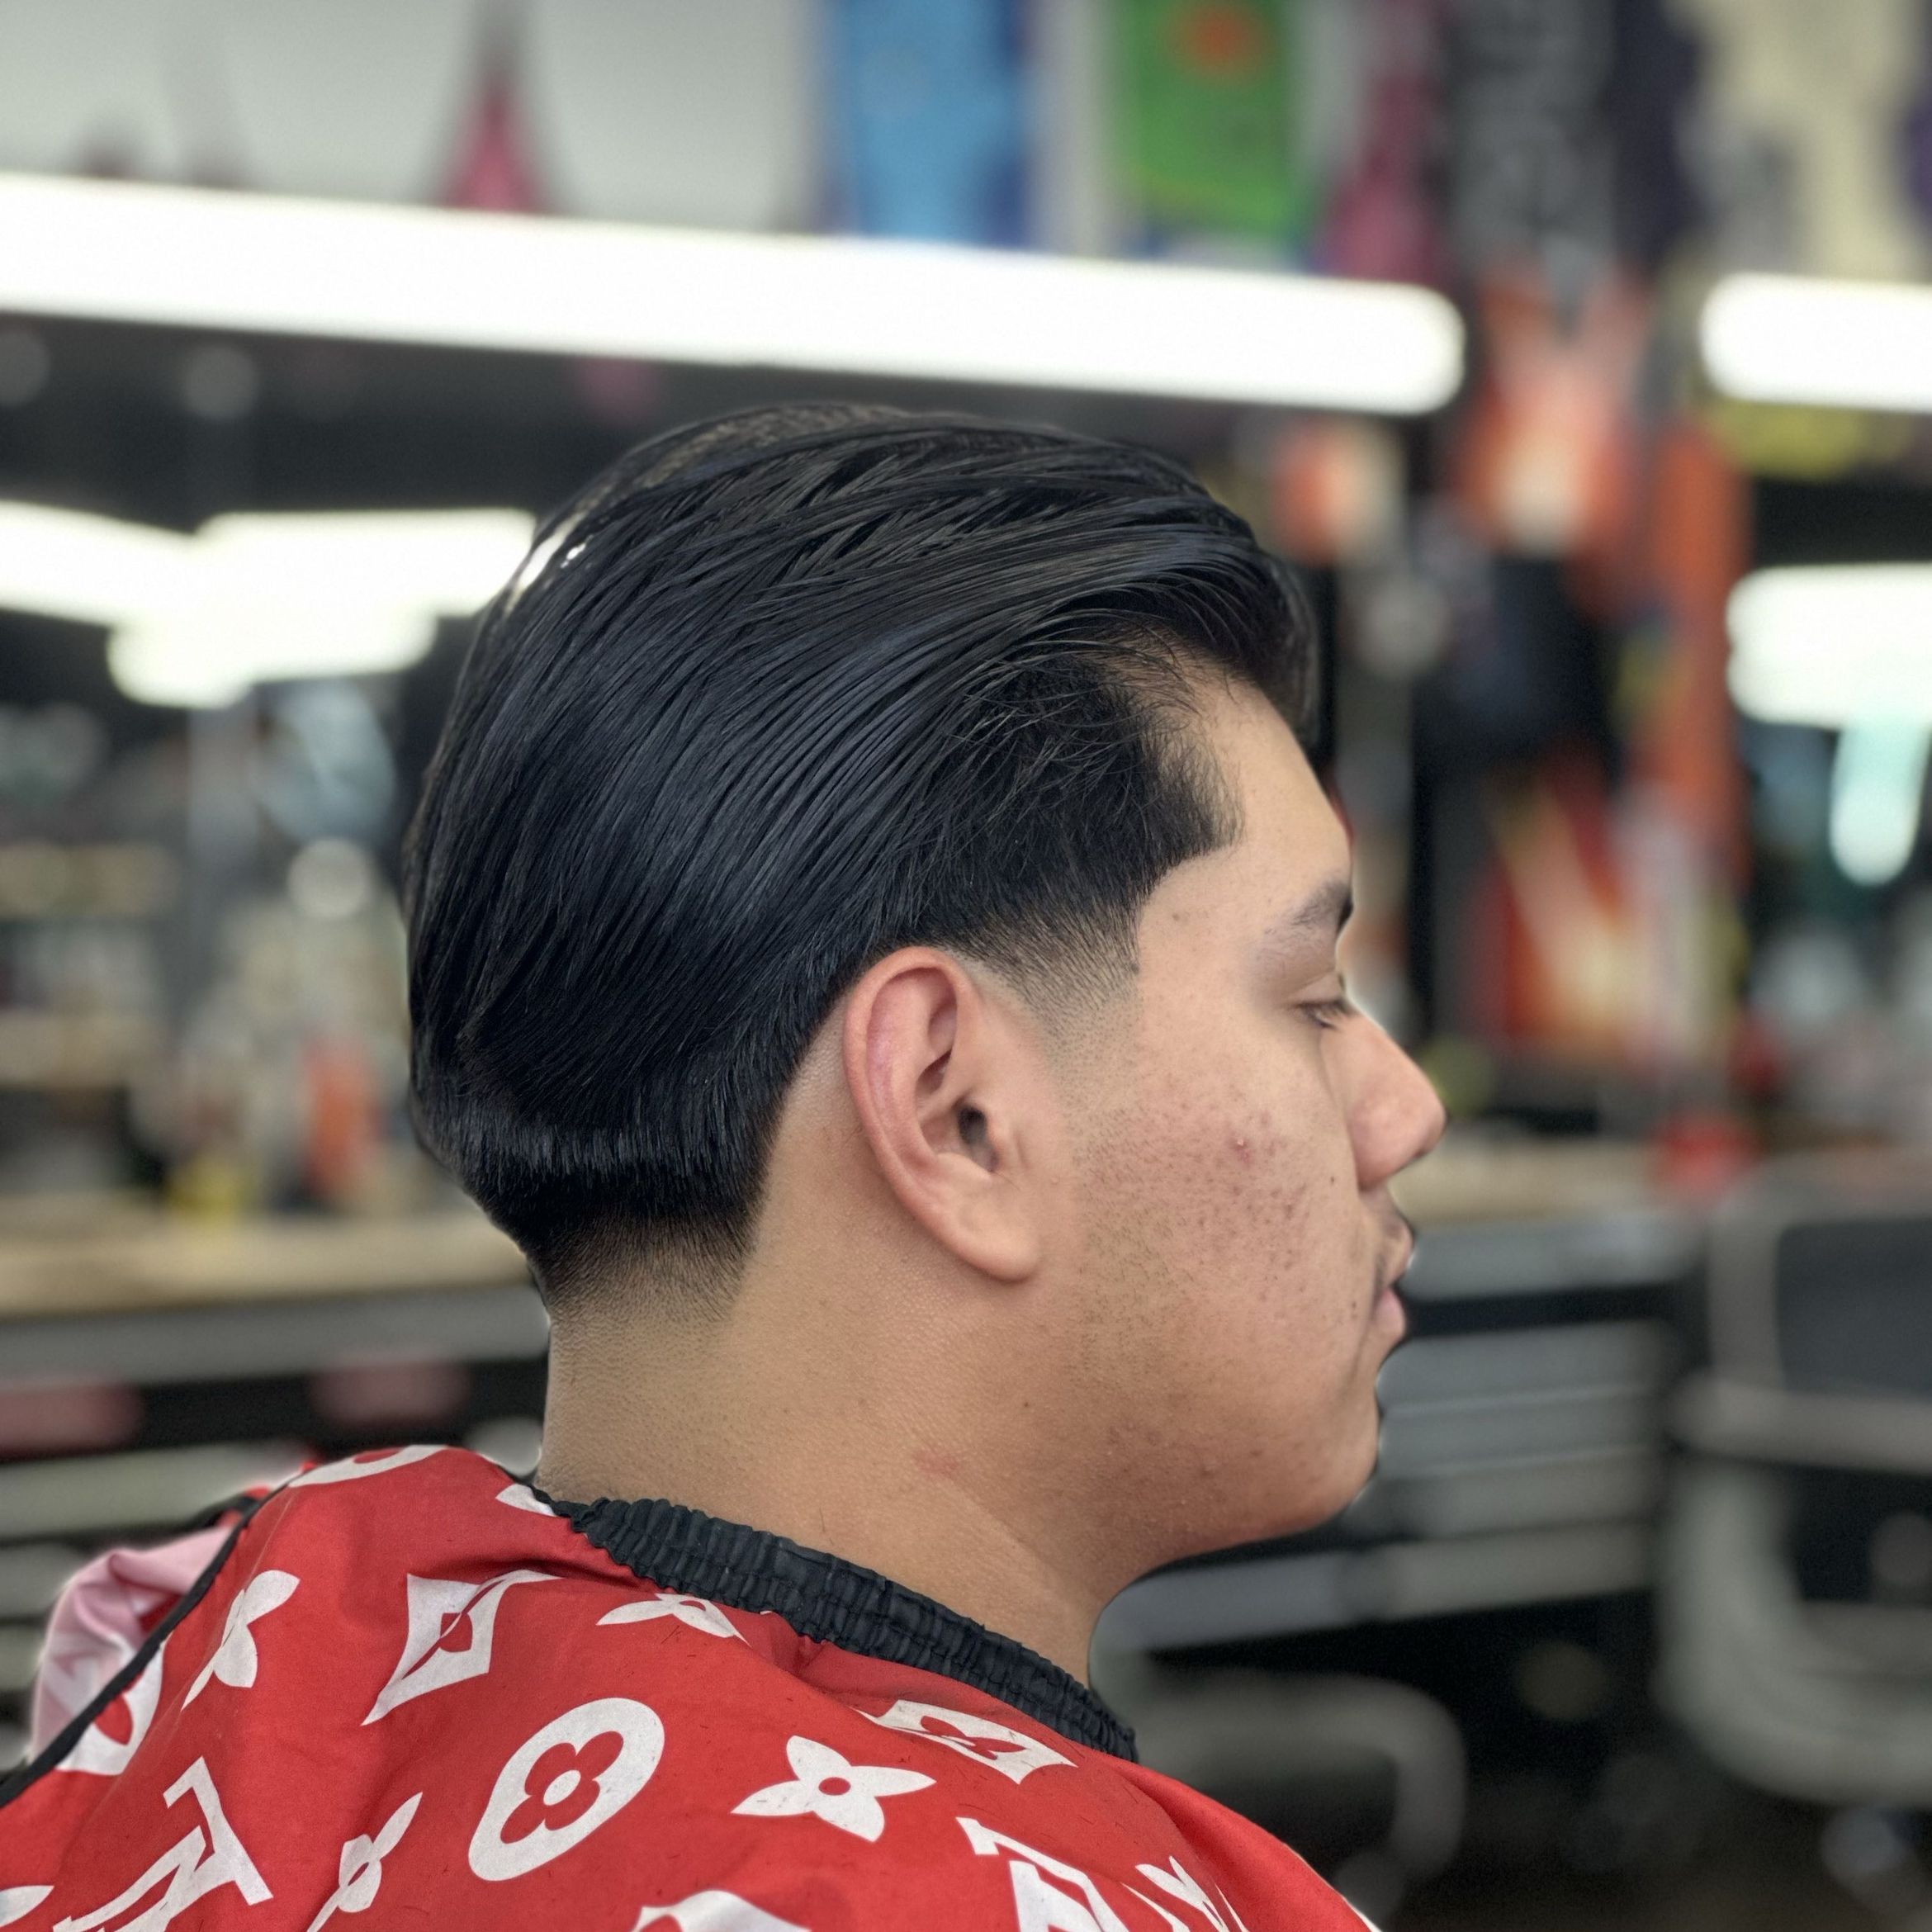 Starter + Bundle (Men’s Haircut w/ Shears) portfolio